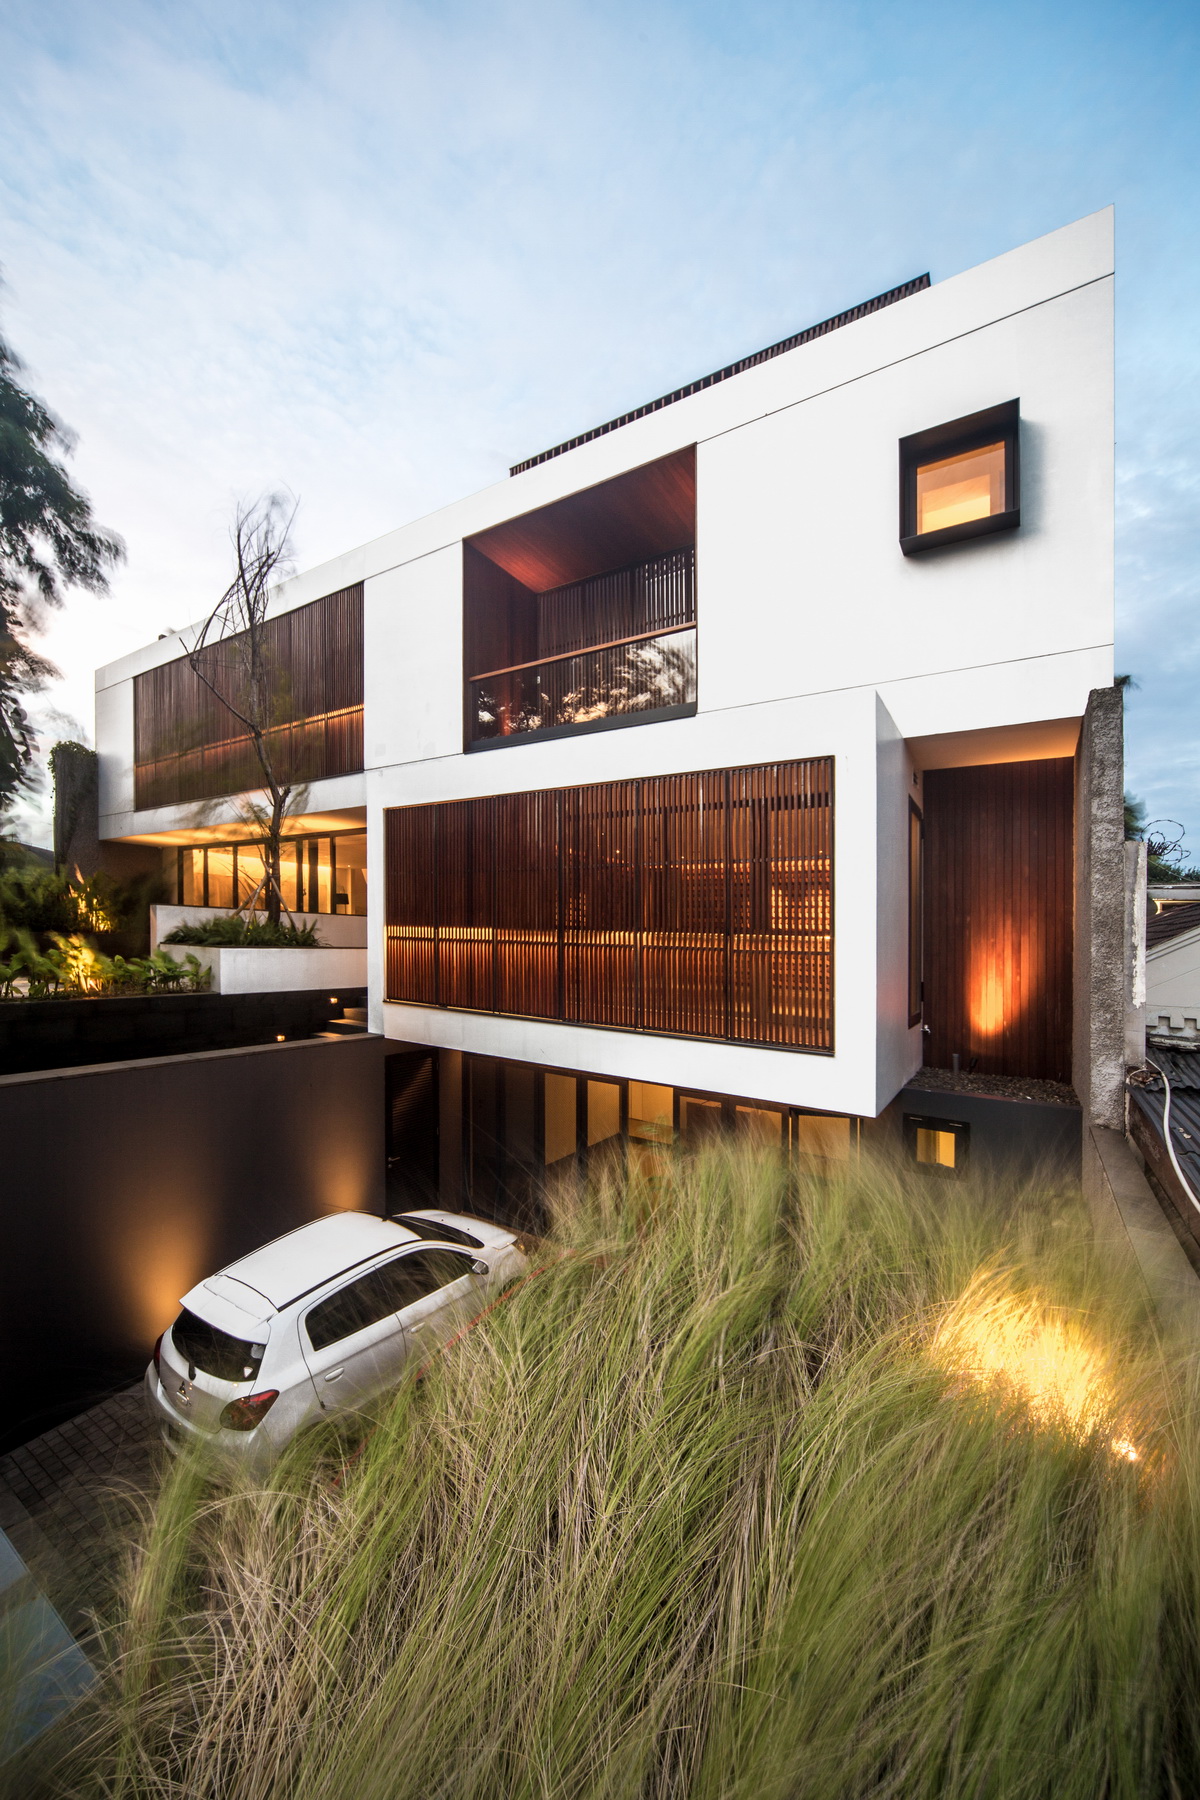 印度尼西亚雅加达独立住宅建筑设计/Rafael Miranti Architects